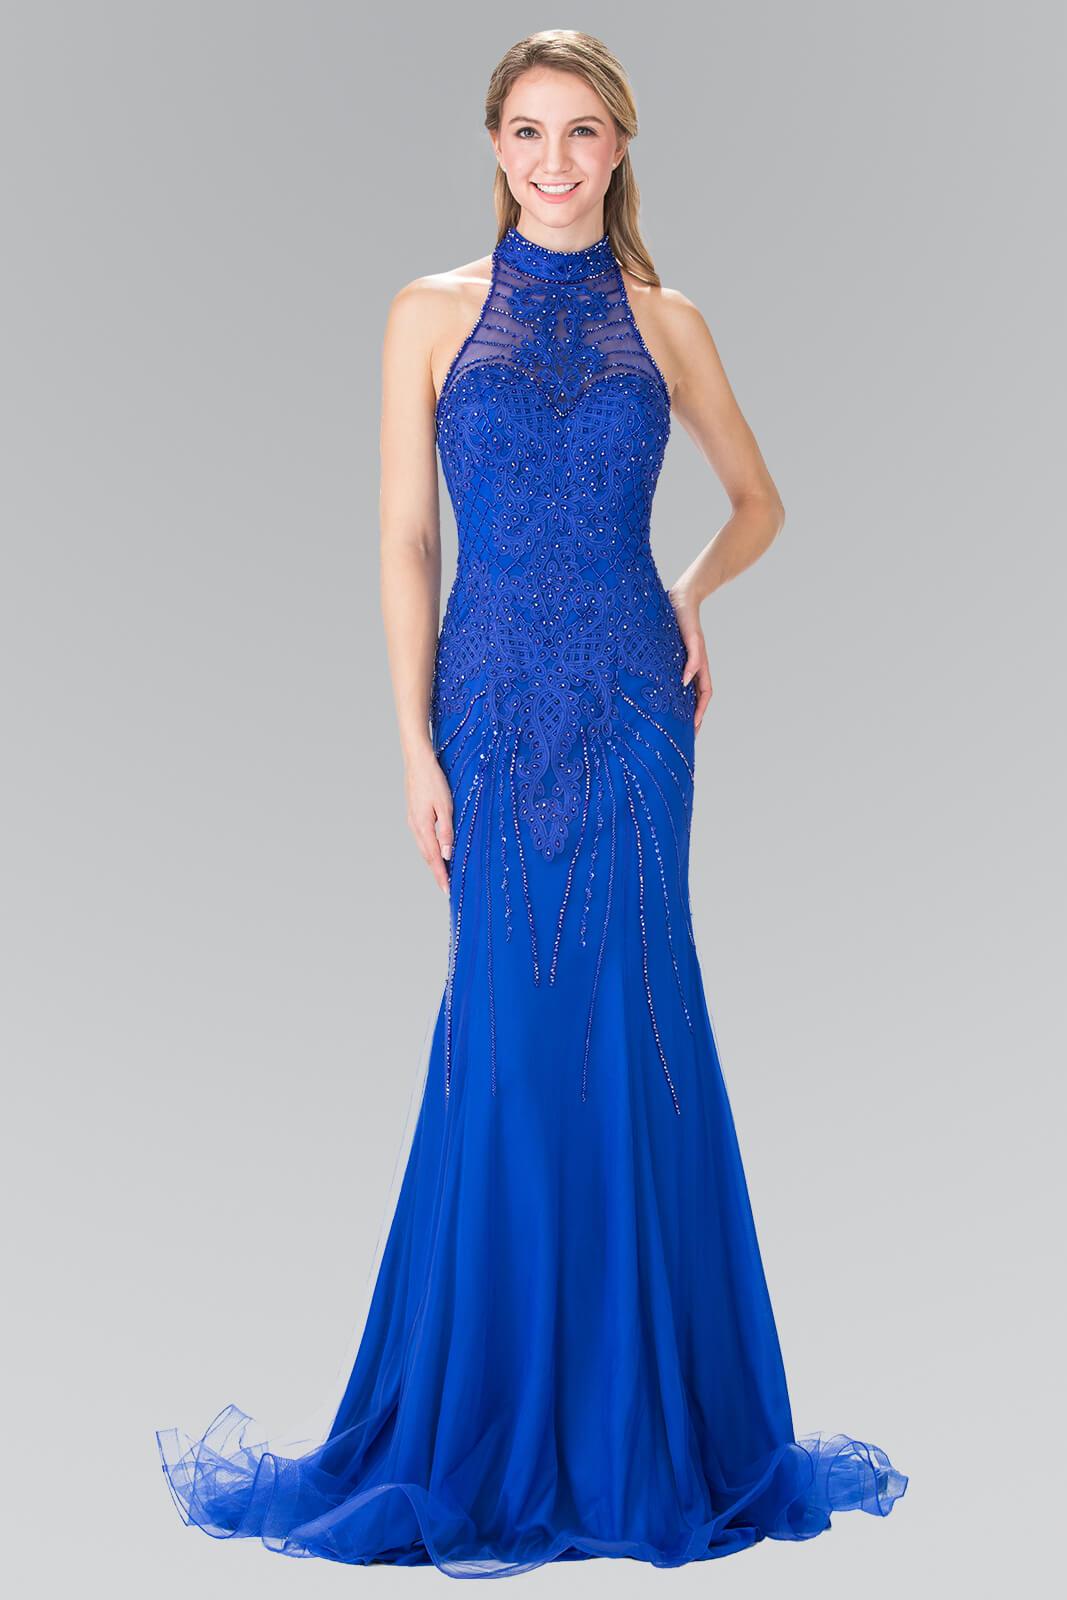 Long Formal Halter Neck Evening Prom Dress - The Dress Outlet Elizabeth K